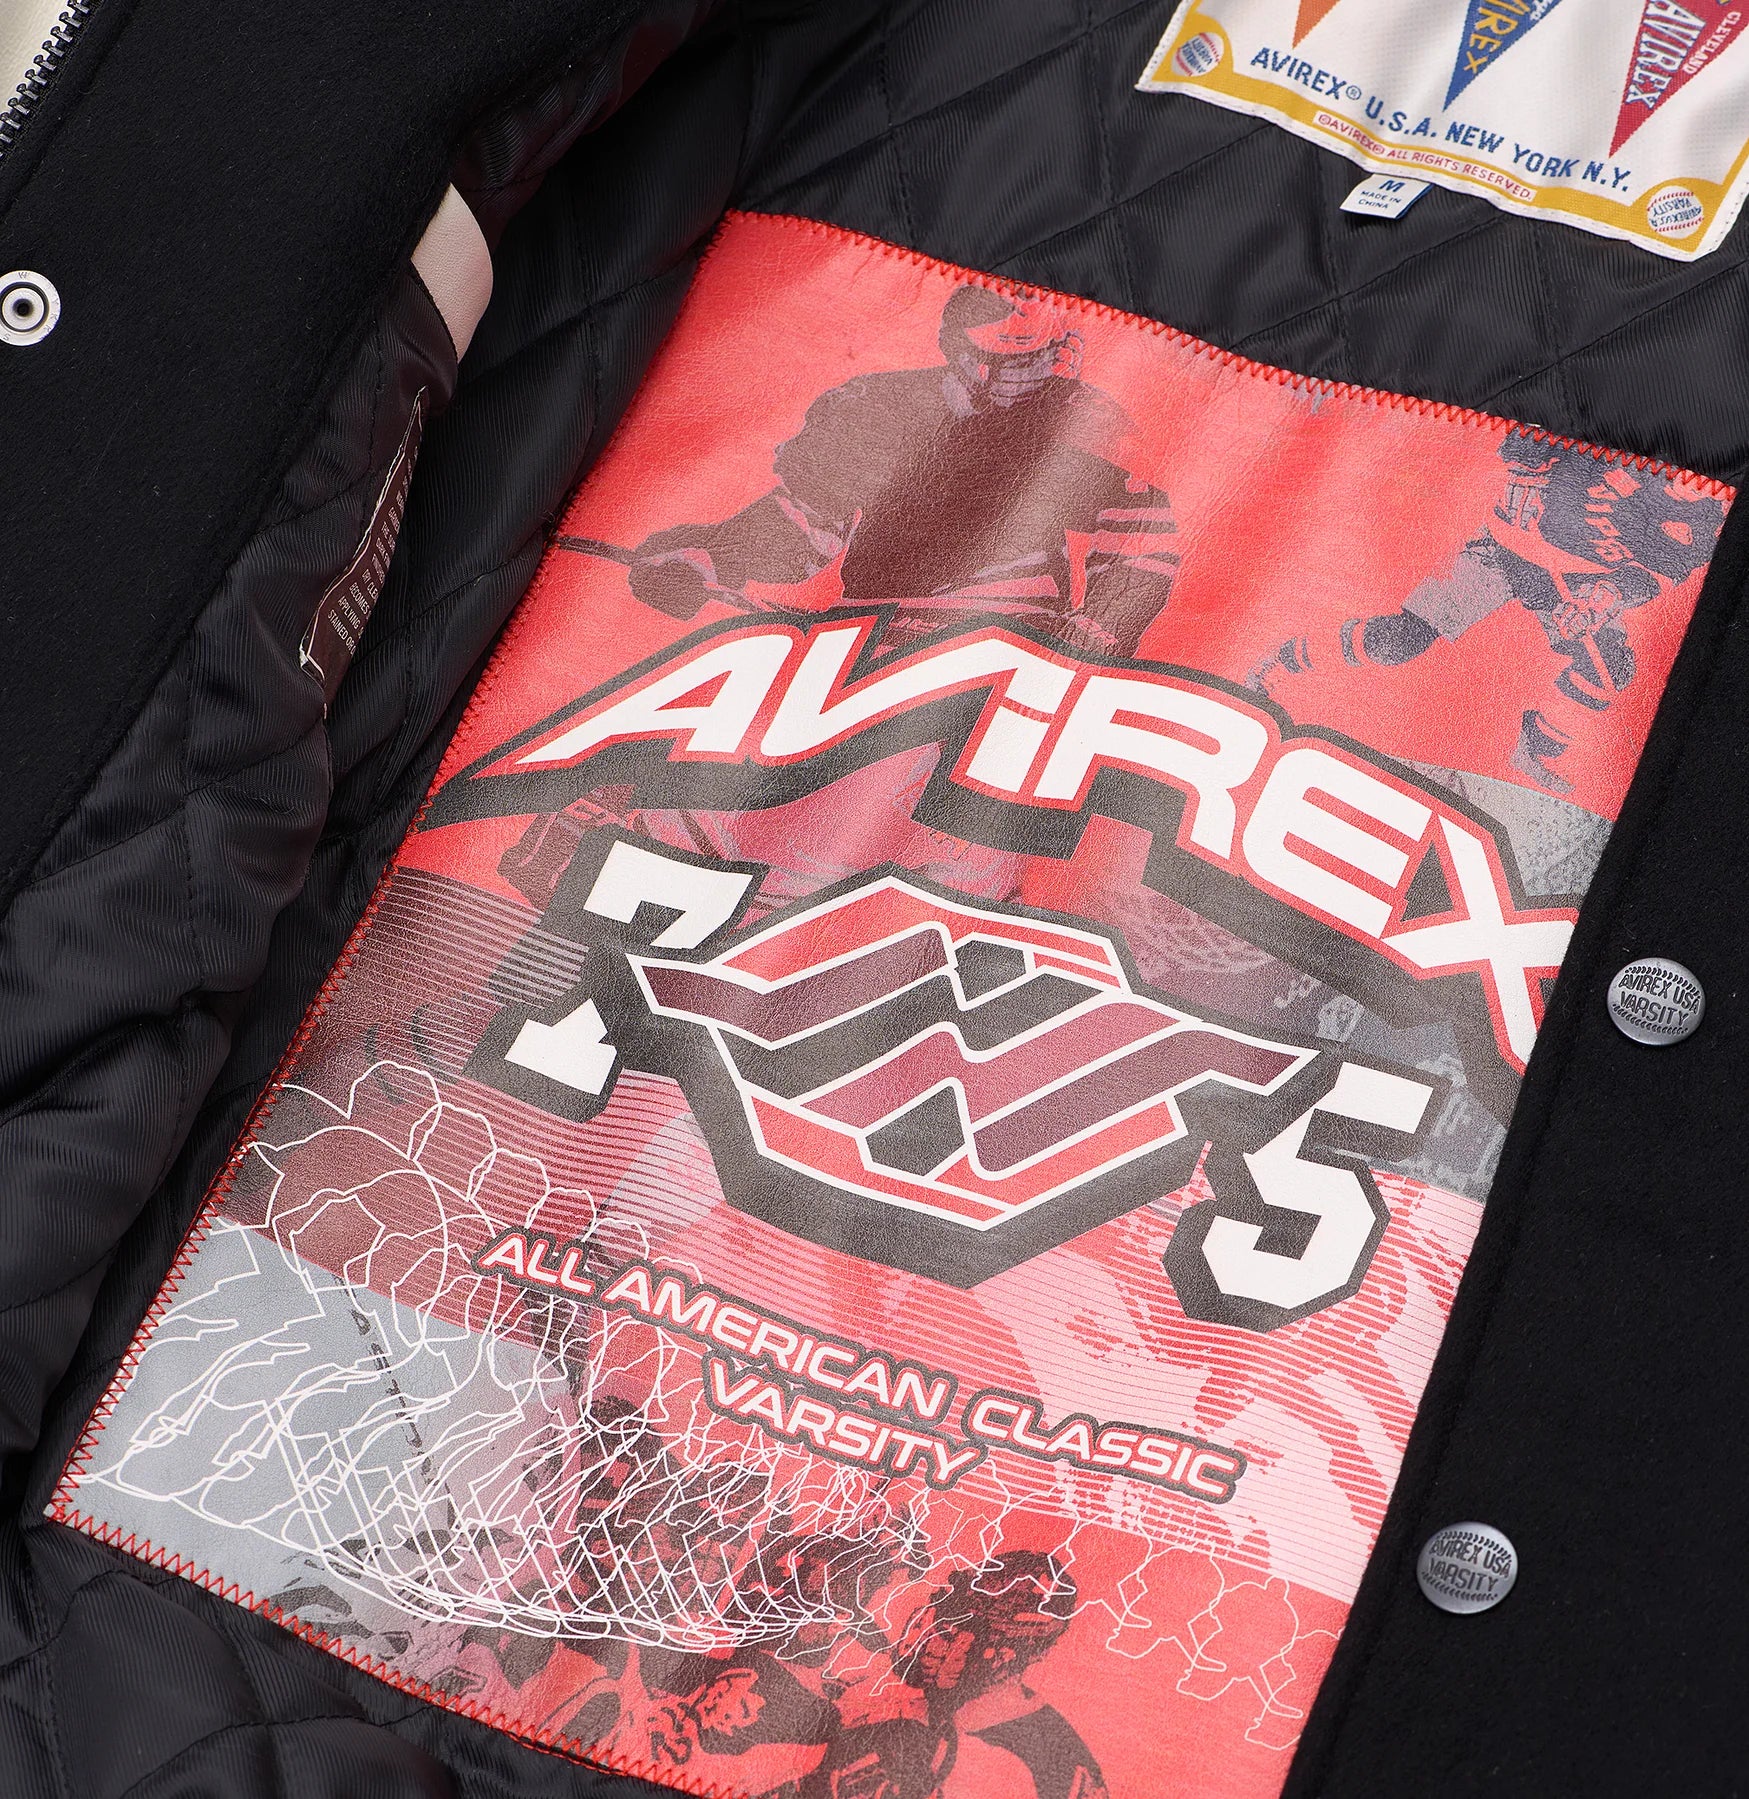 avirex-omega-wool-leather-jacket-inside